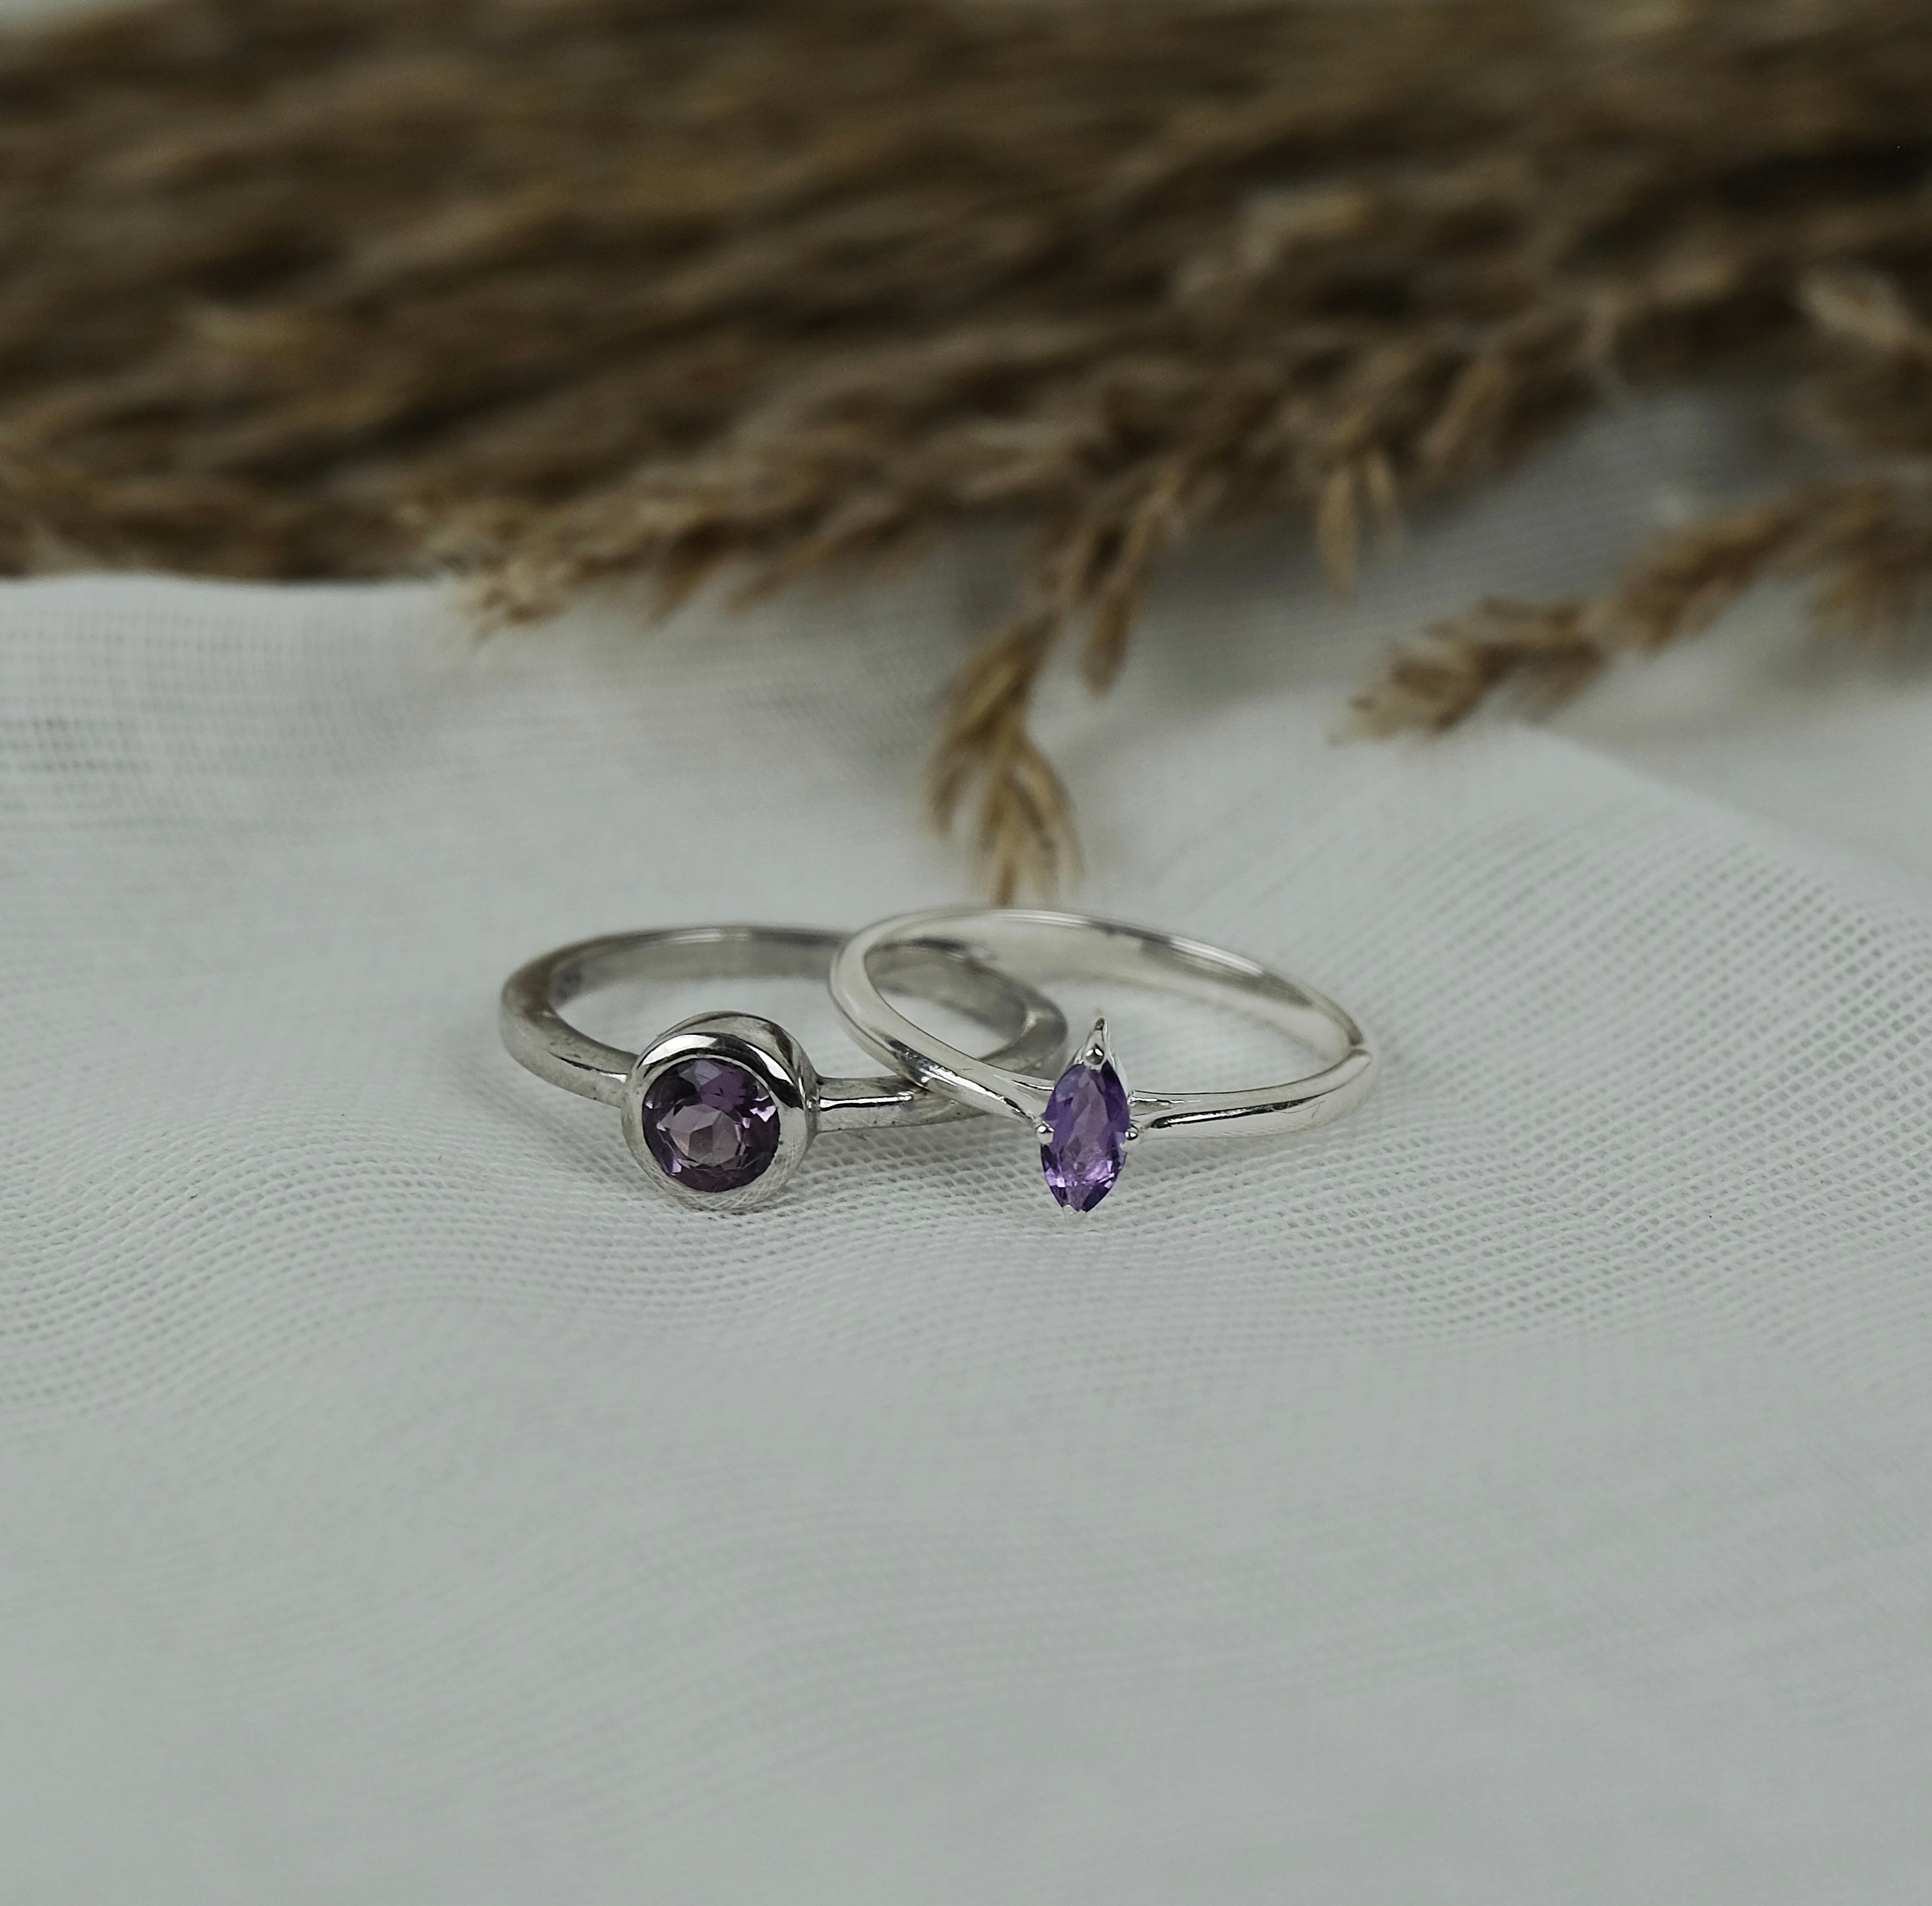 Two amethyst gemstone rings